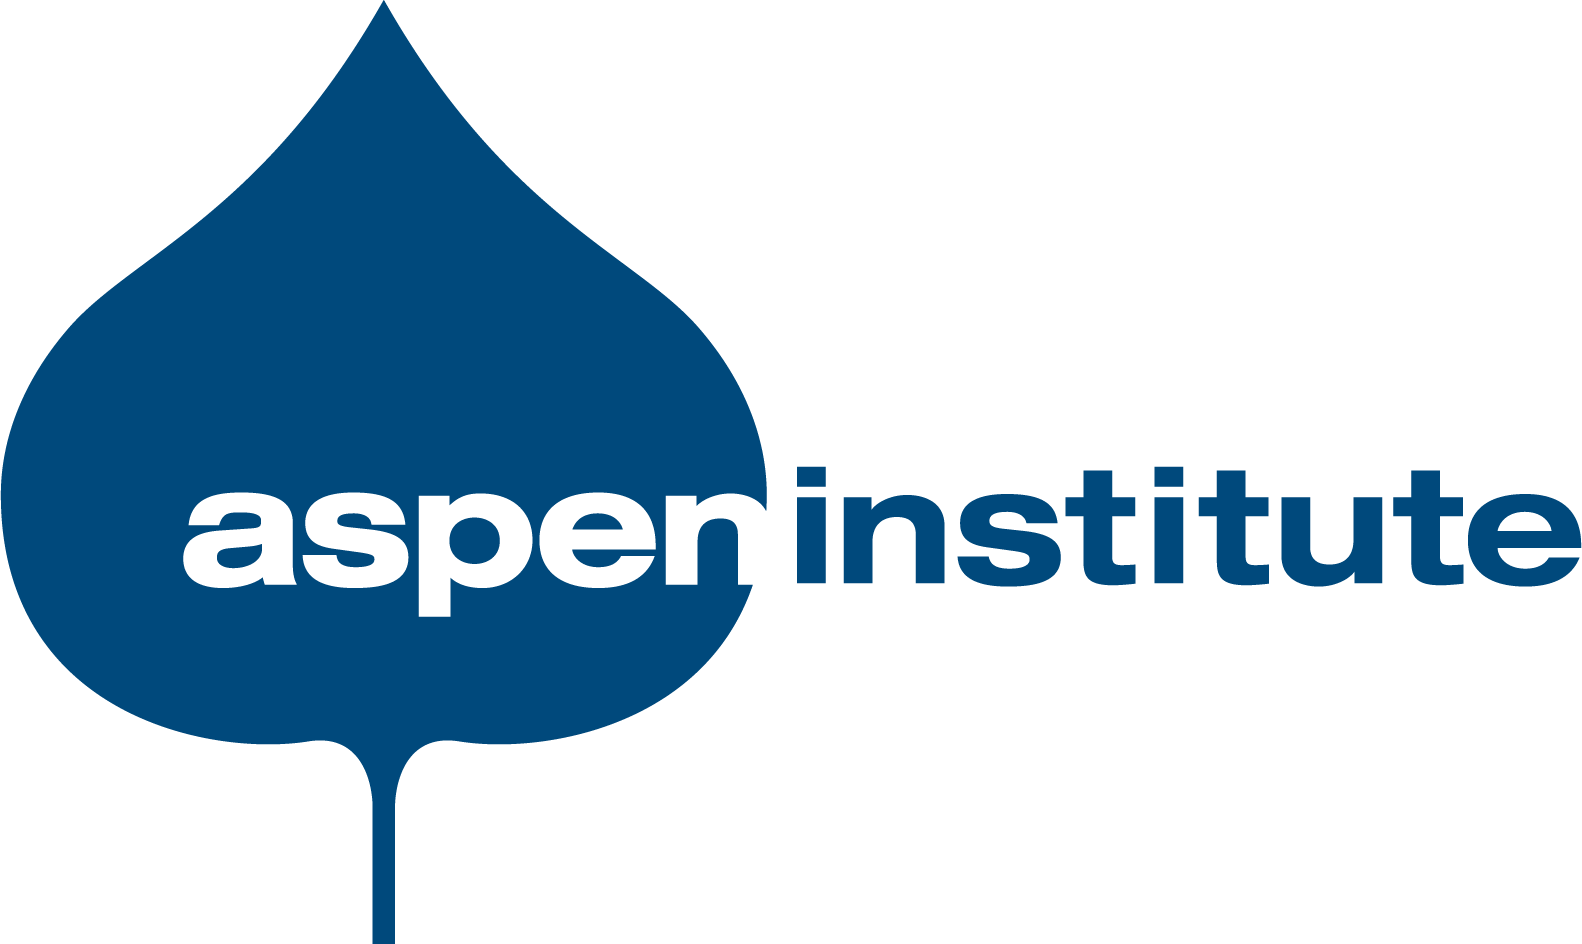 Aspen Institute’s 20